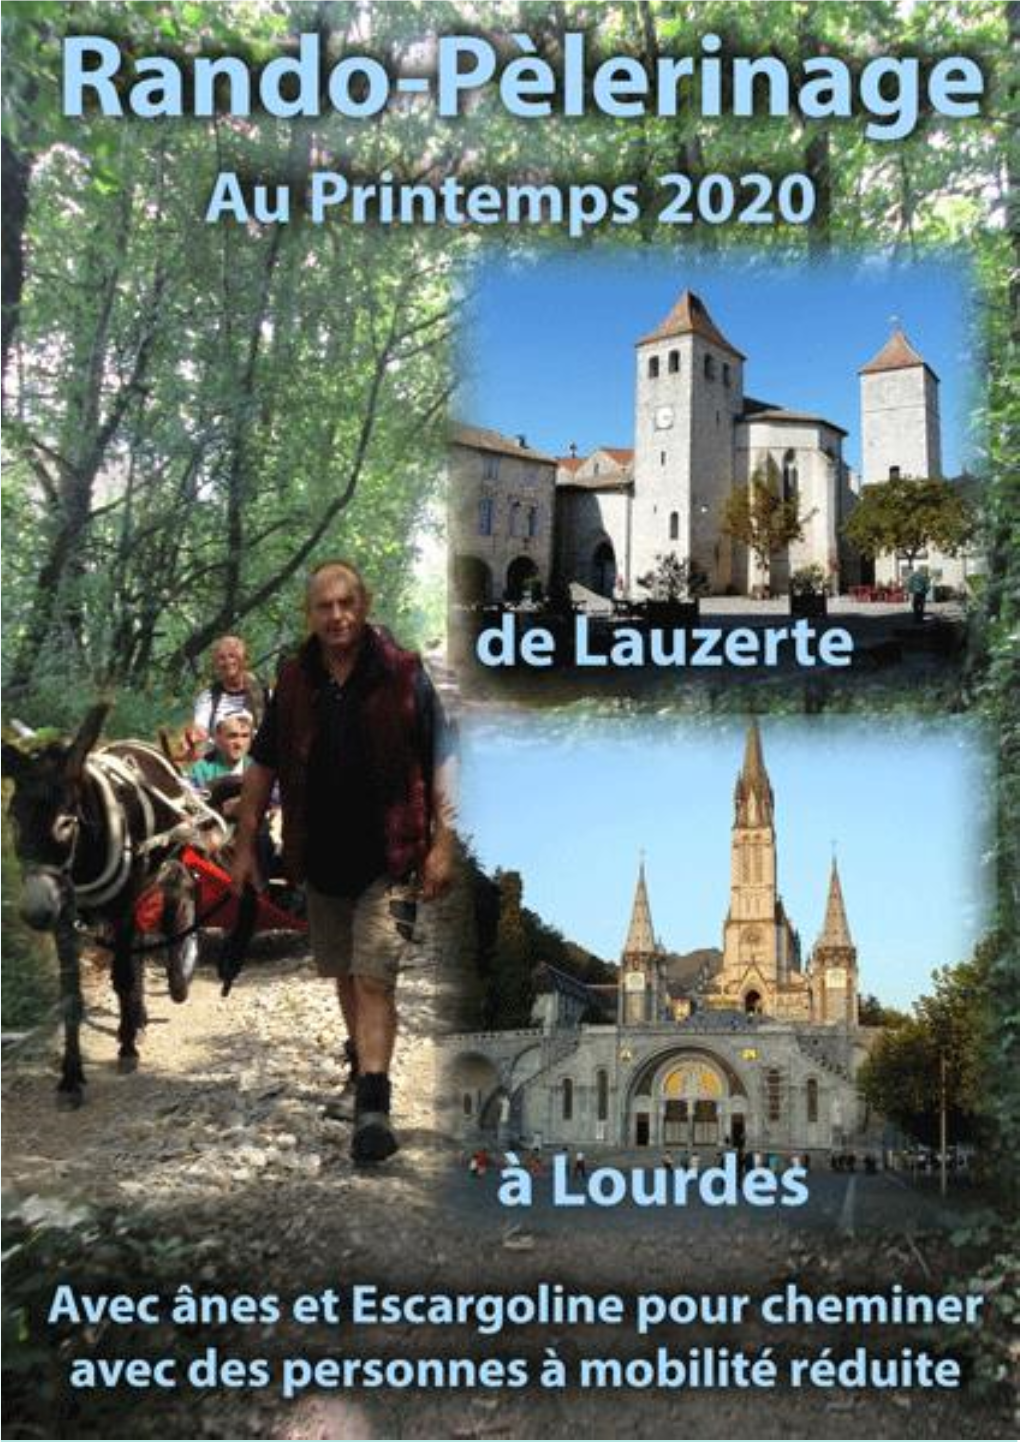 Rando-Pélérinage Lauzerte-Lourdes